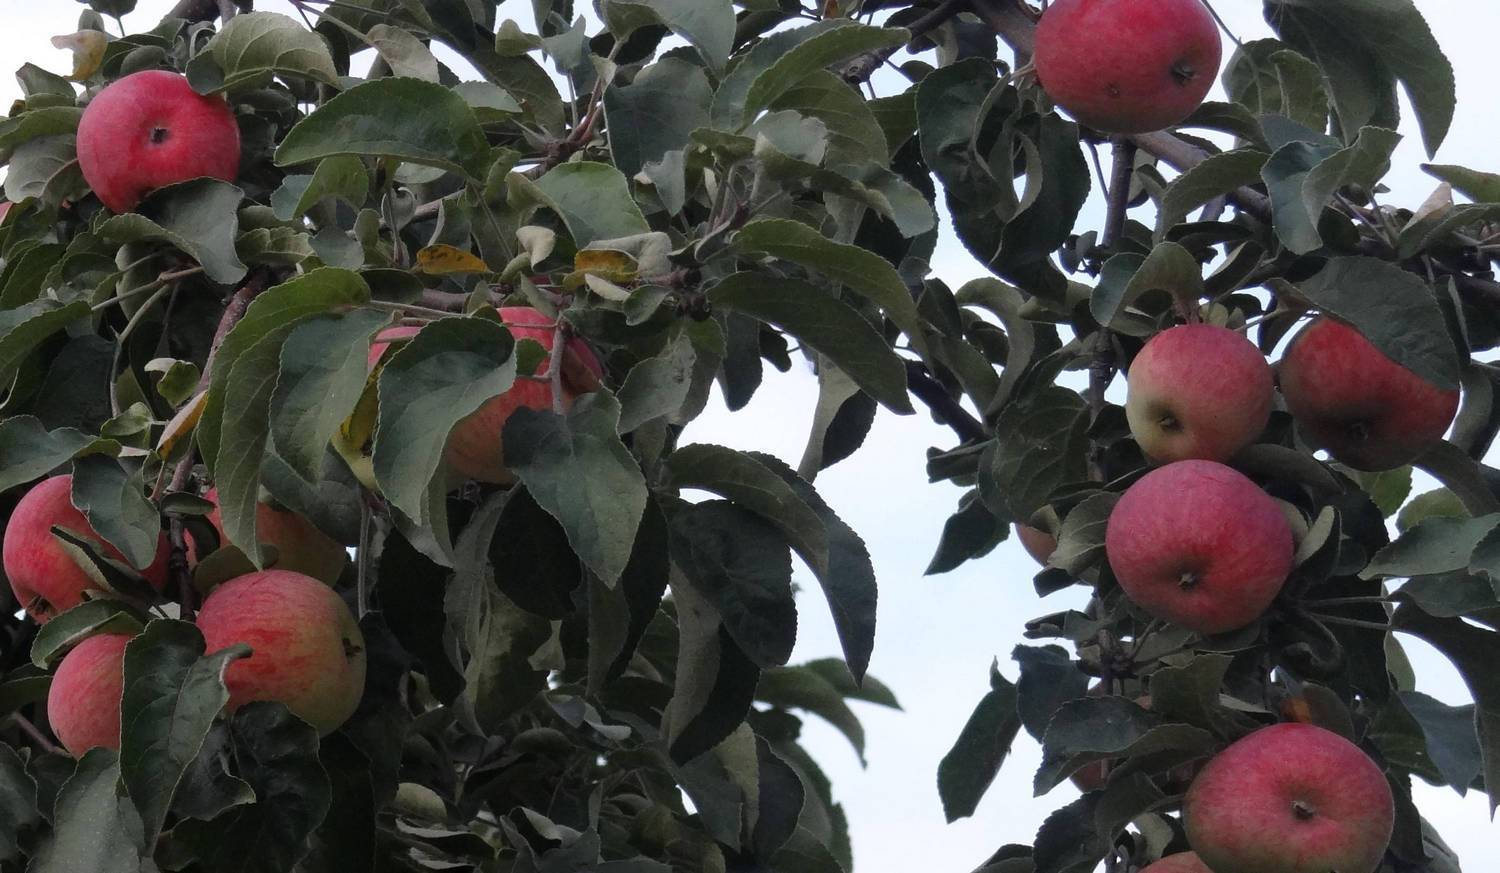 Яблоня: посадка и уход в открытом грунте | фото